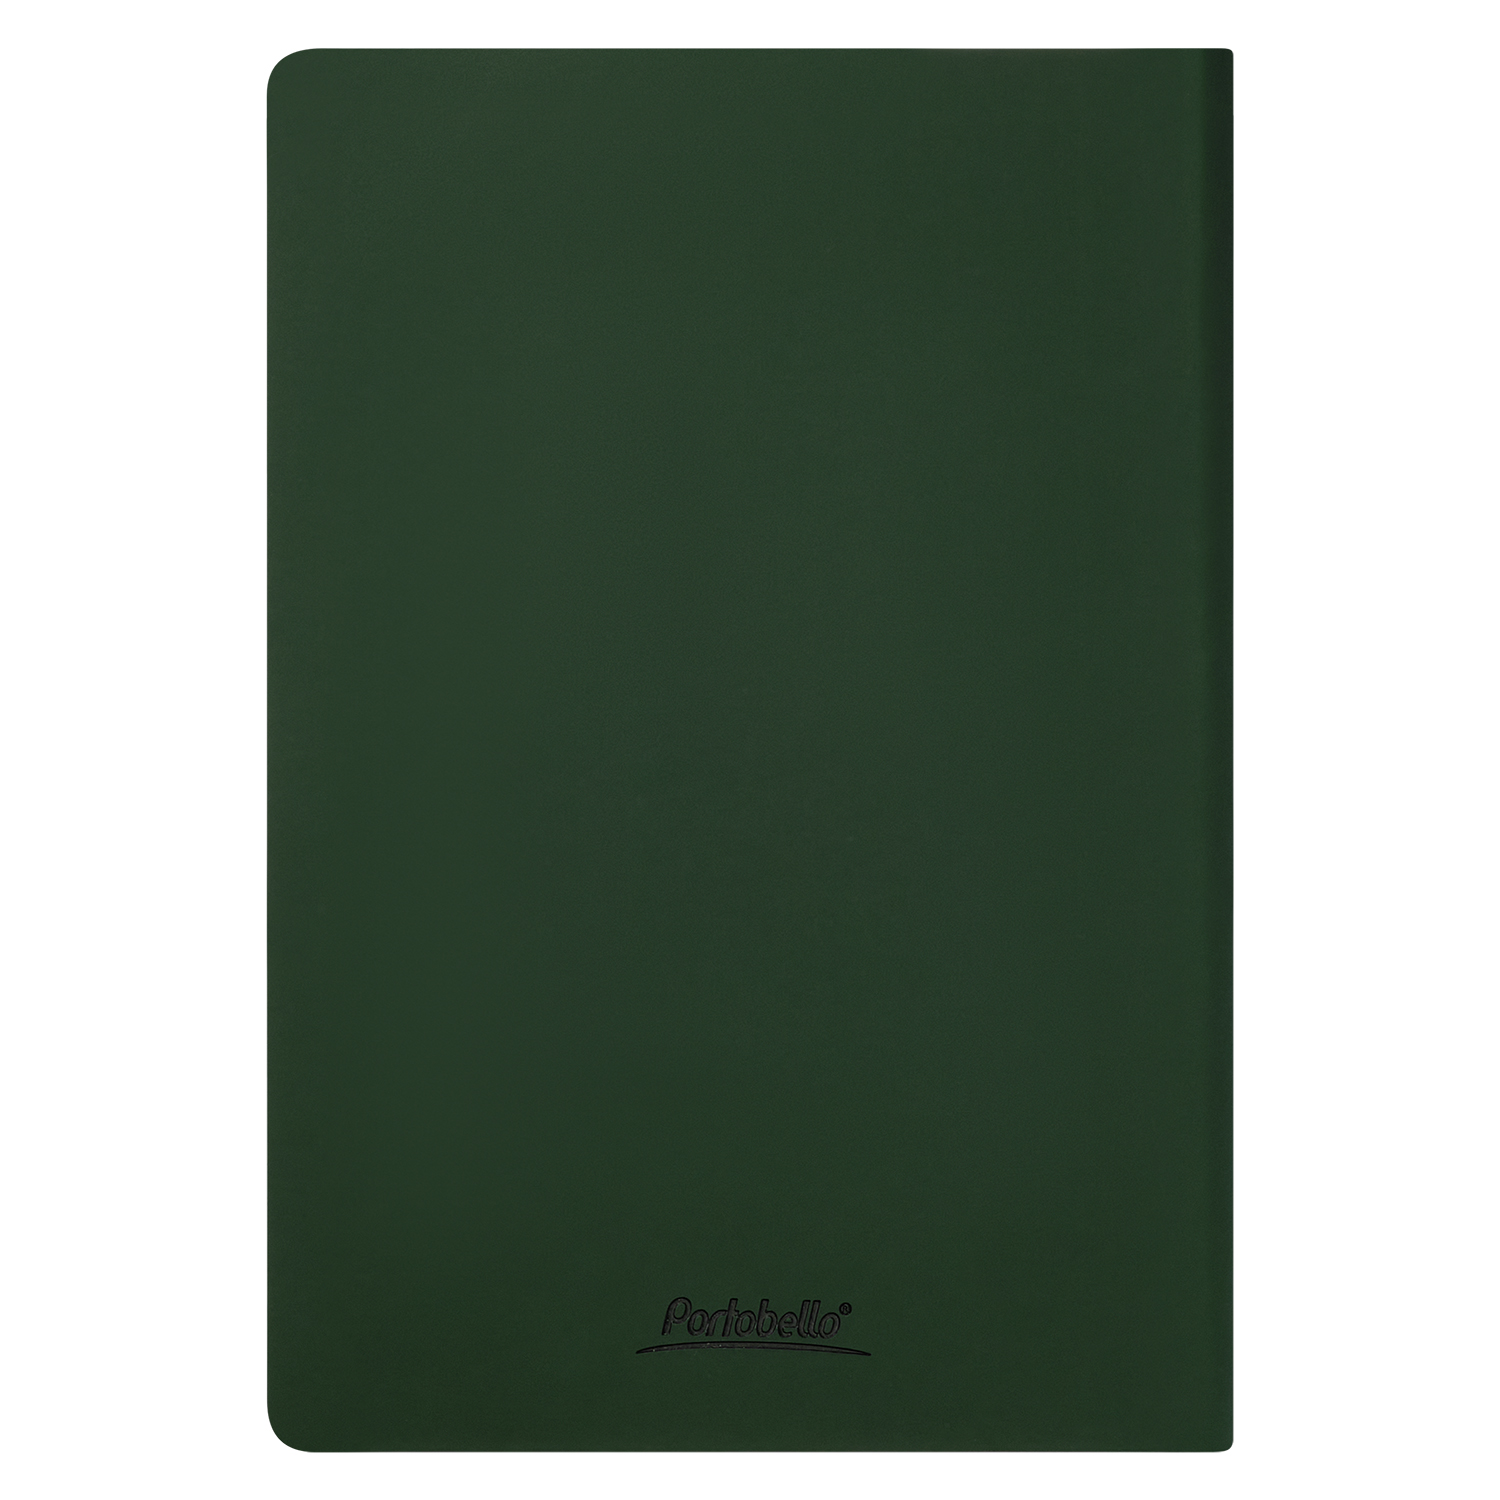 Ежедневник Spark недатированный, зеленый (без упаковки, без стикера)